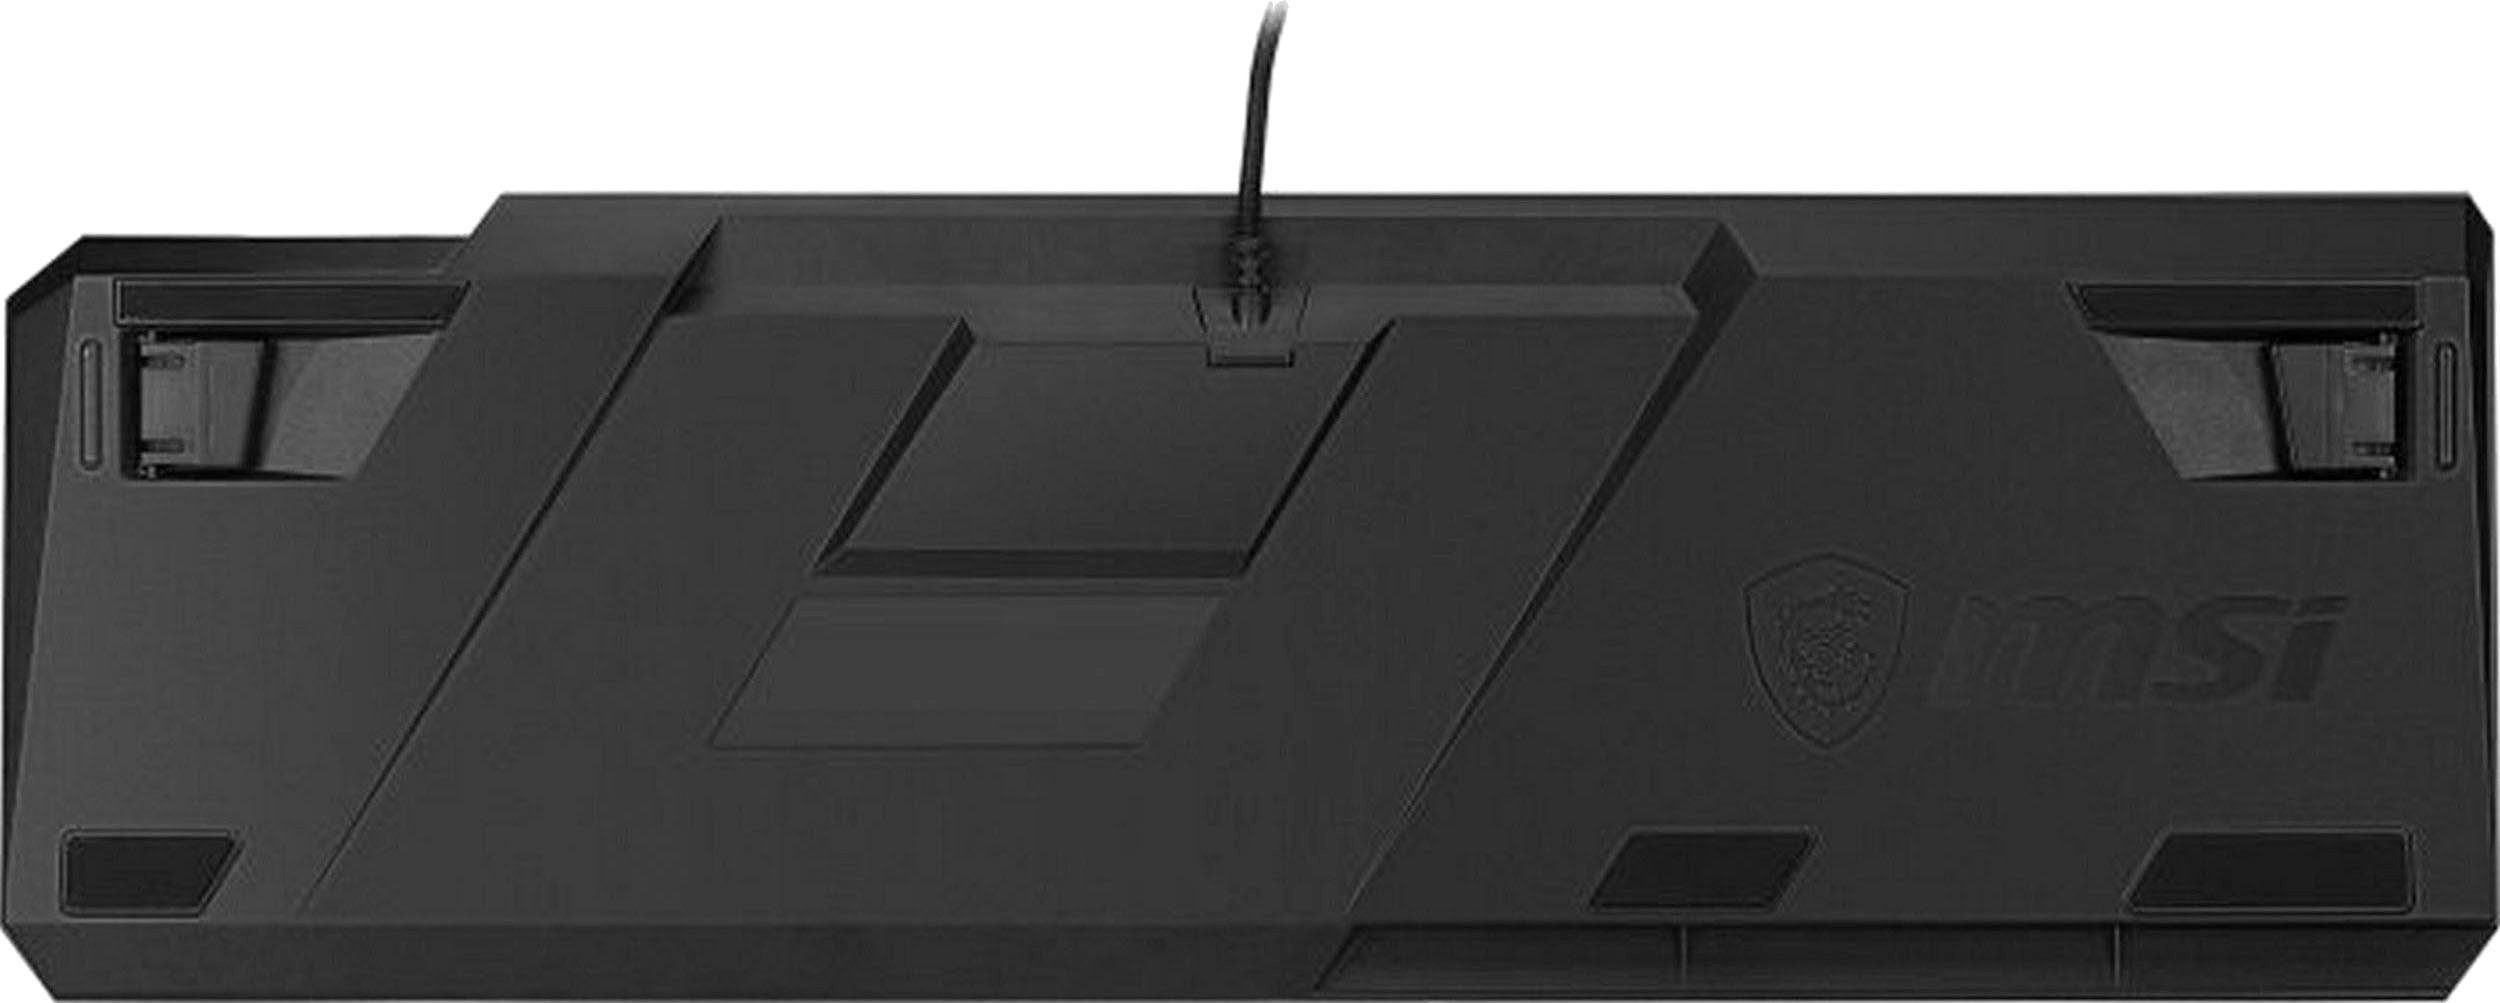 MSI VIGOR PROFILE GK50 LOW Gaming-Tastatur